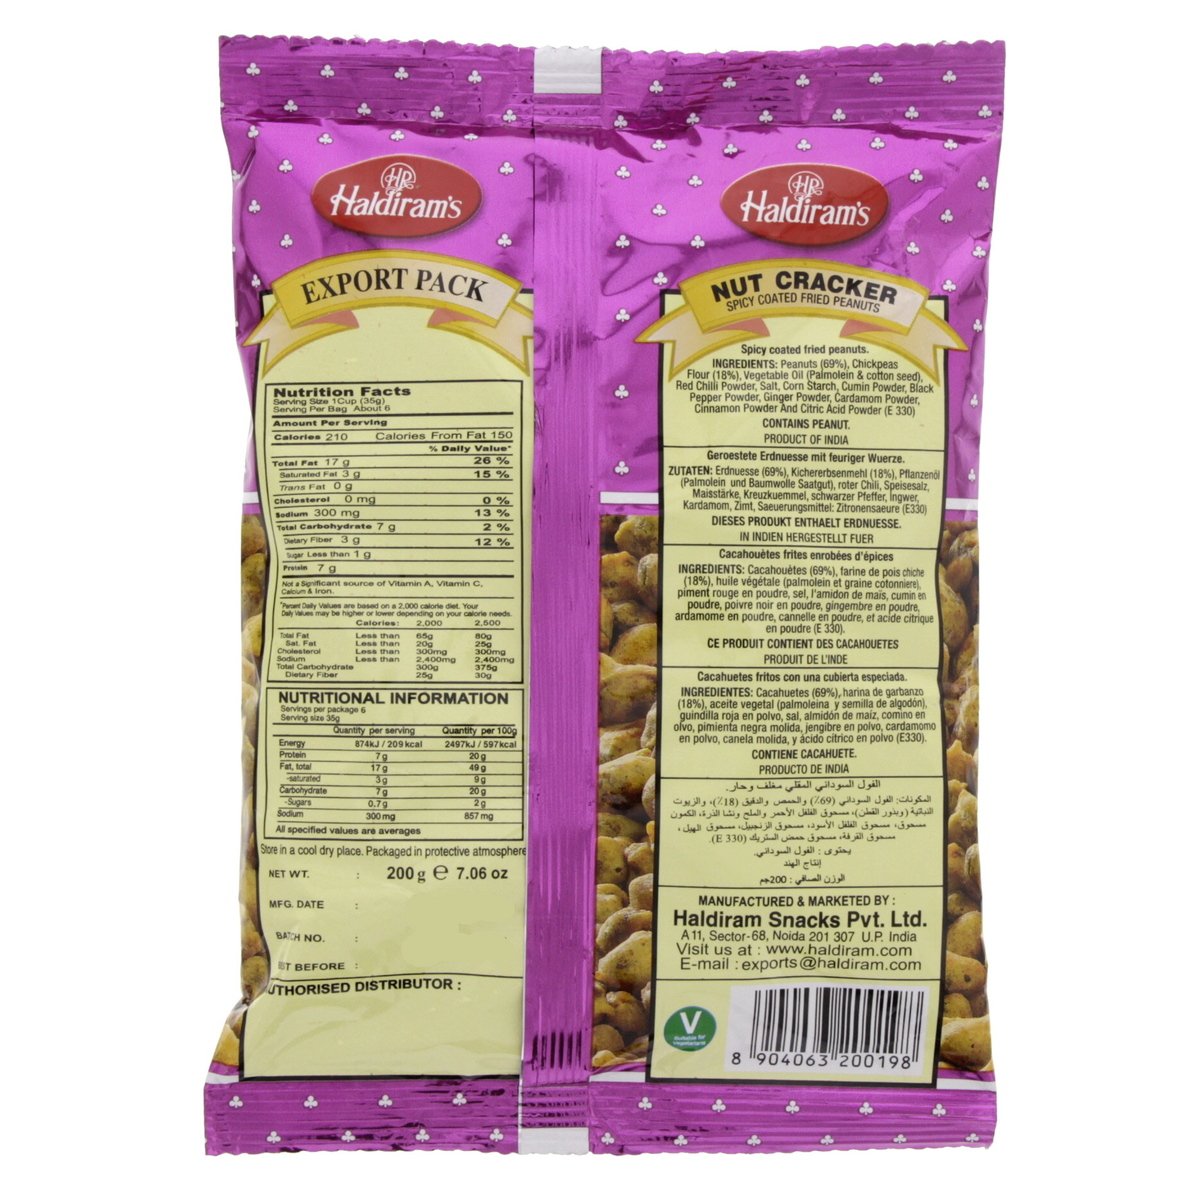 Haldiram's Nut Cracker Spicy Fried Peanuts 200 g